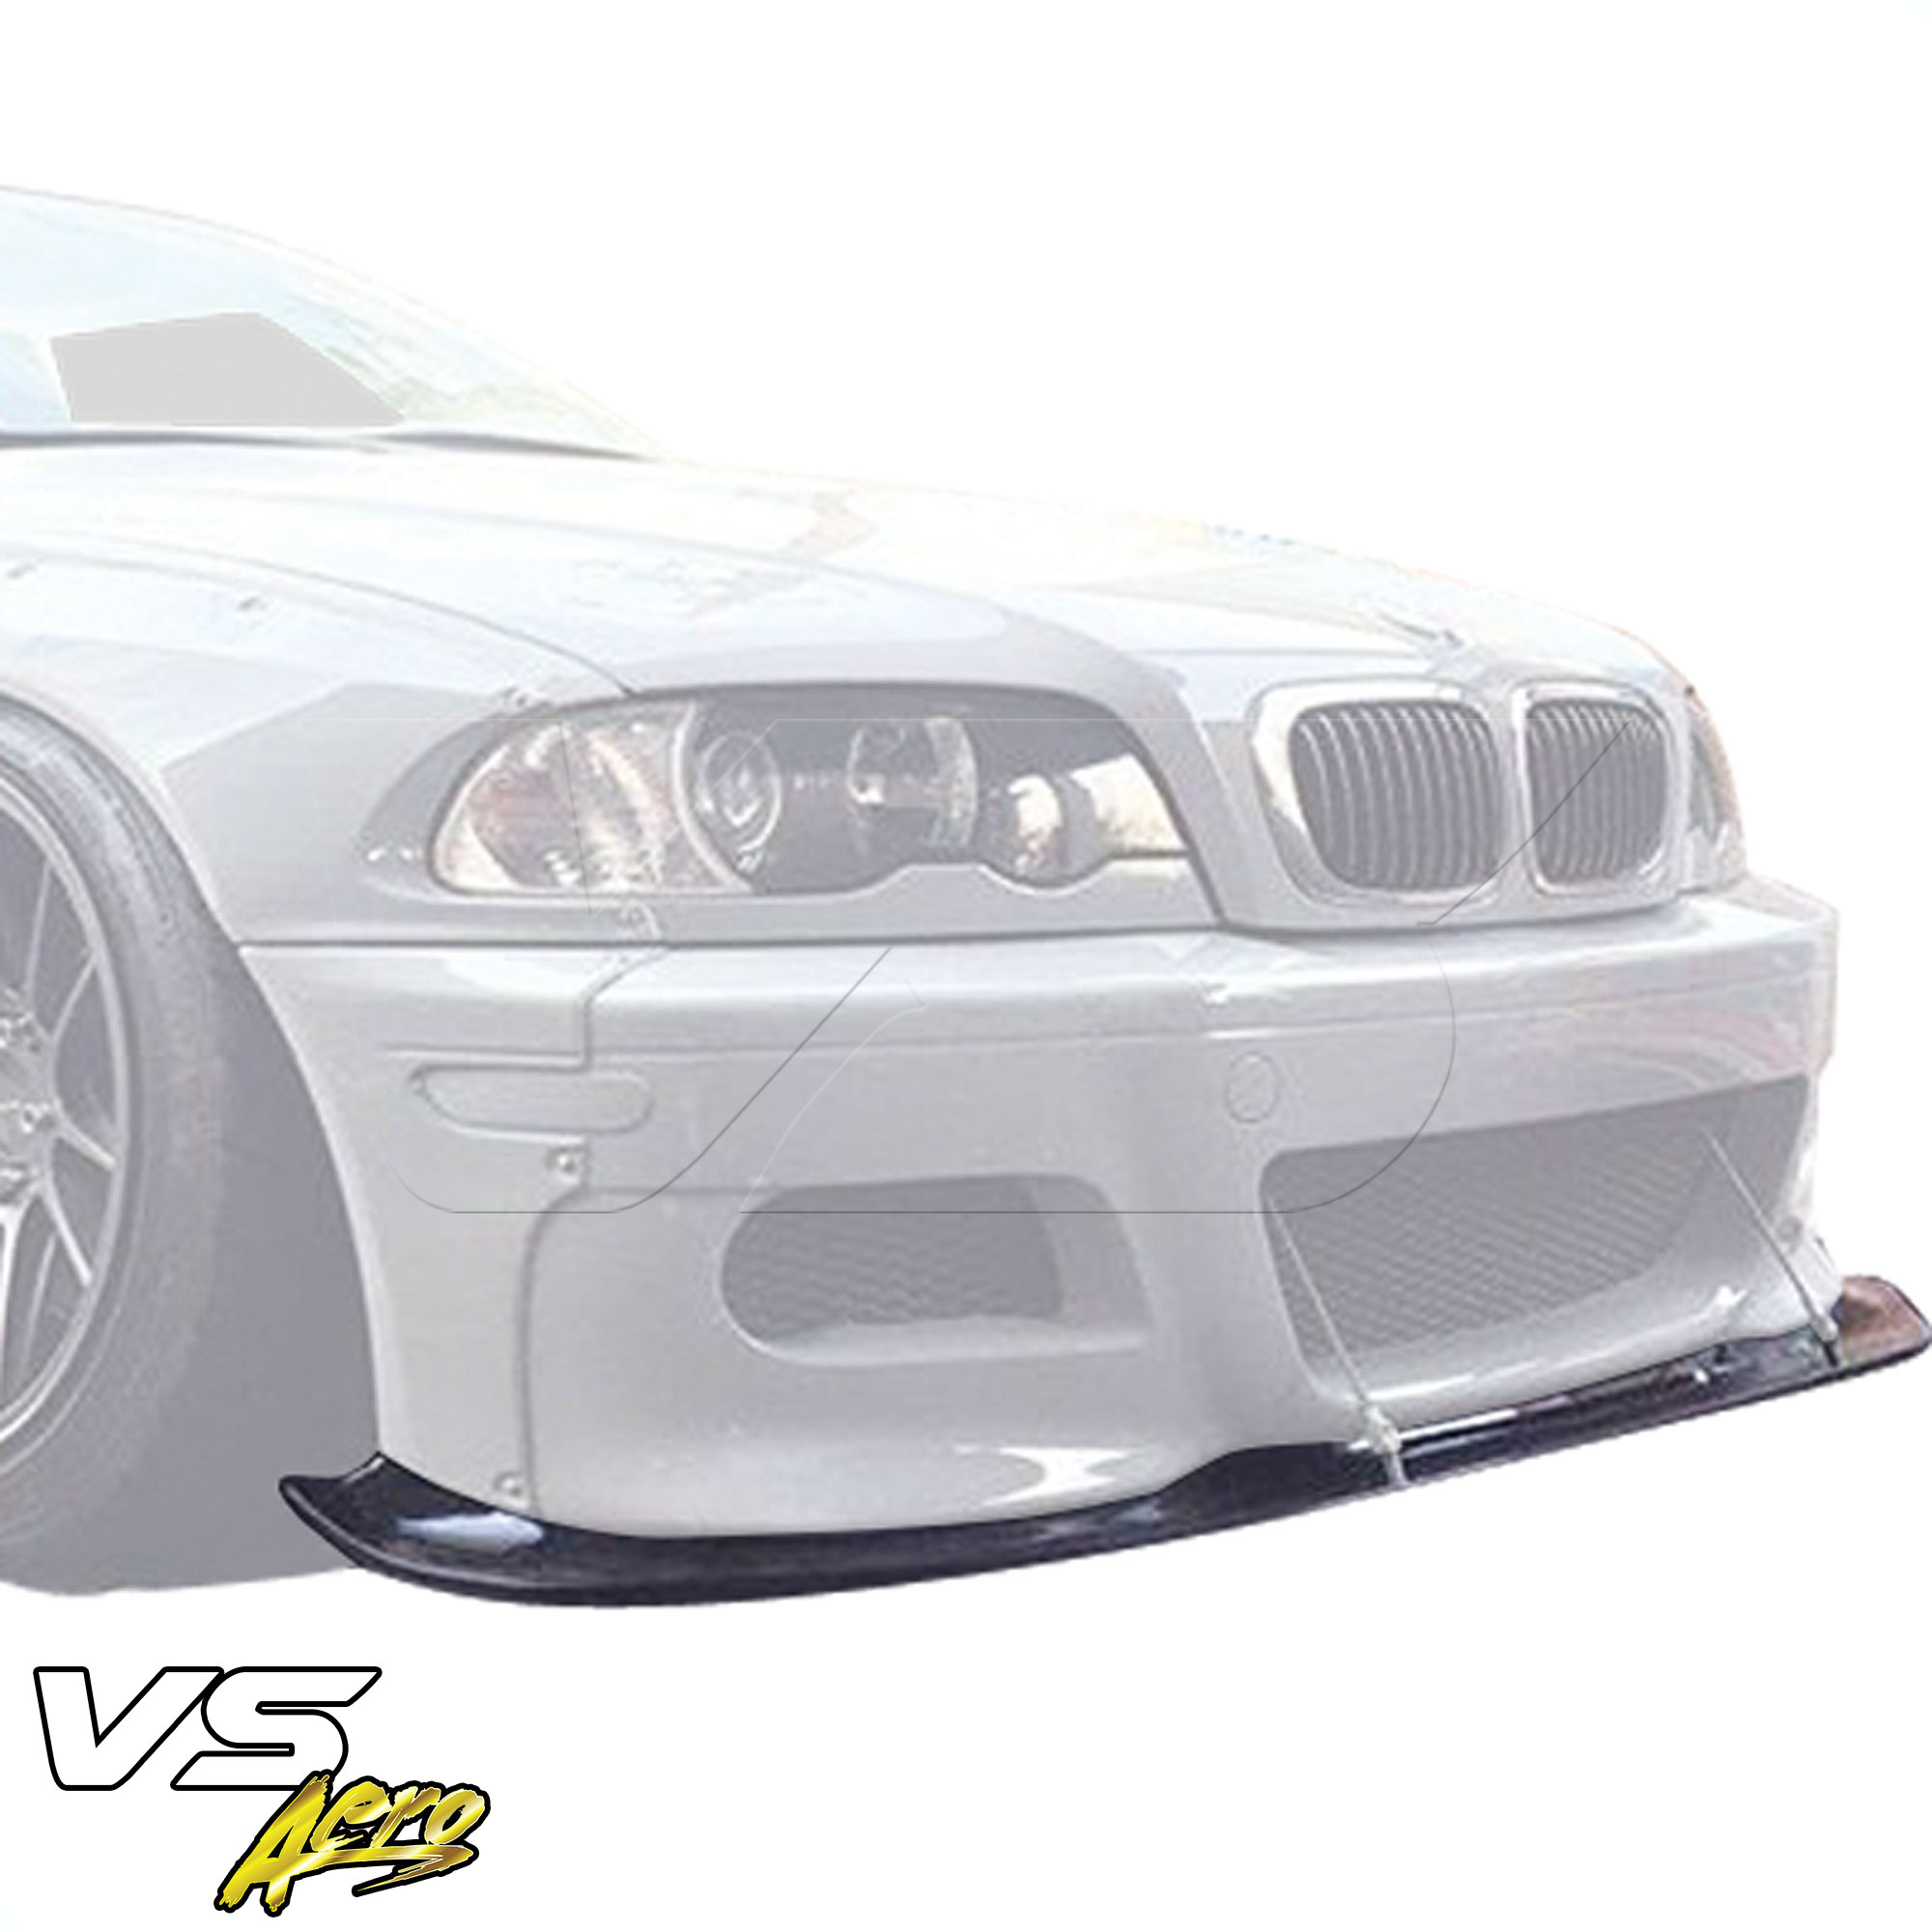 VSaero FRP TKYO Wide Body Front Lip > BMW 3-Series 325Ci 330Ci E46 1999-2001 > 2dr Coupe - Image 7